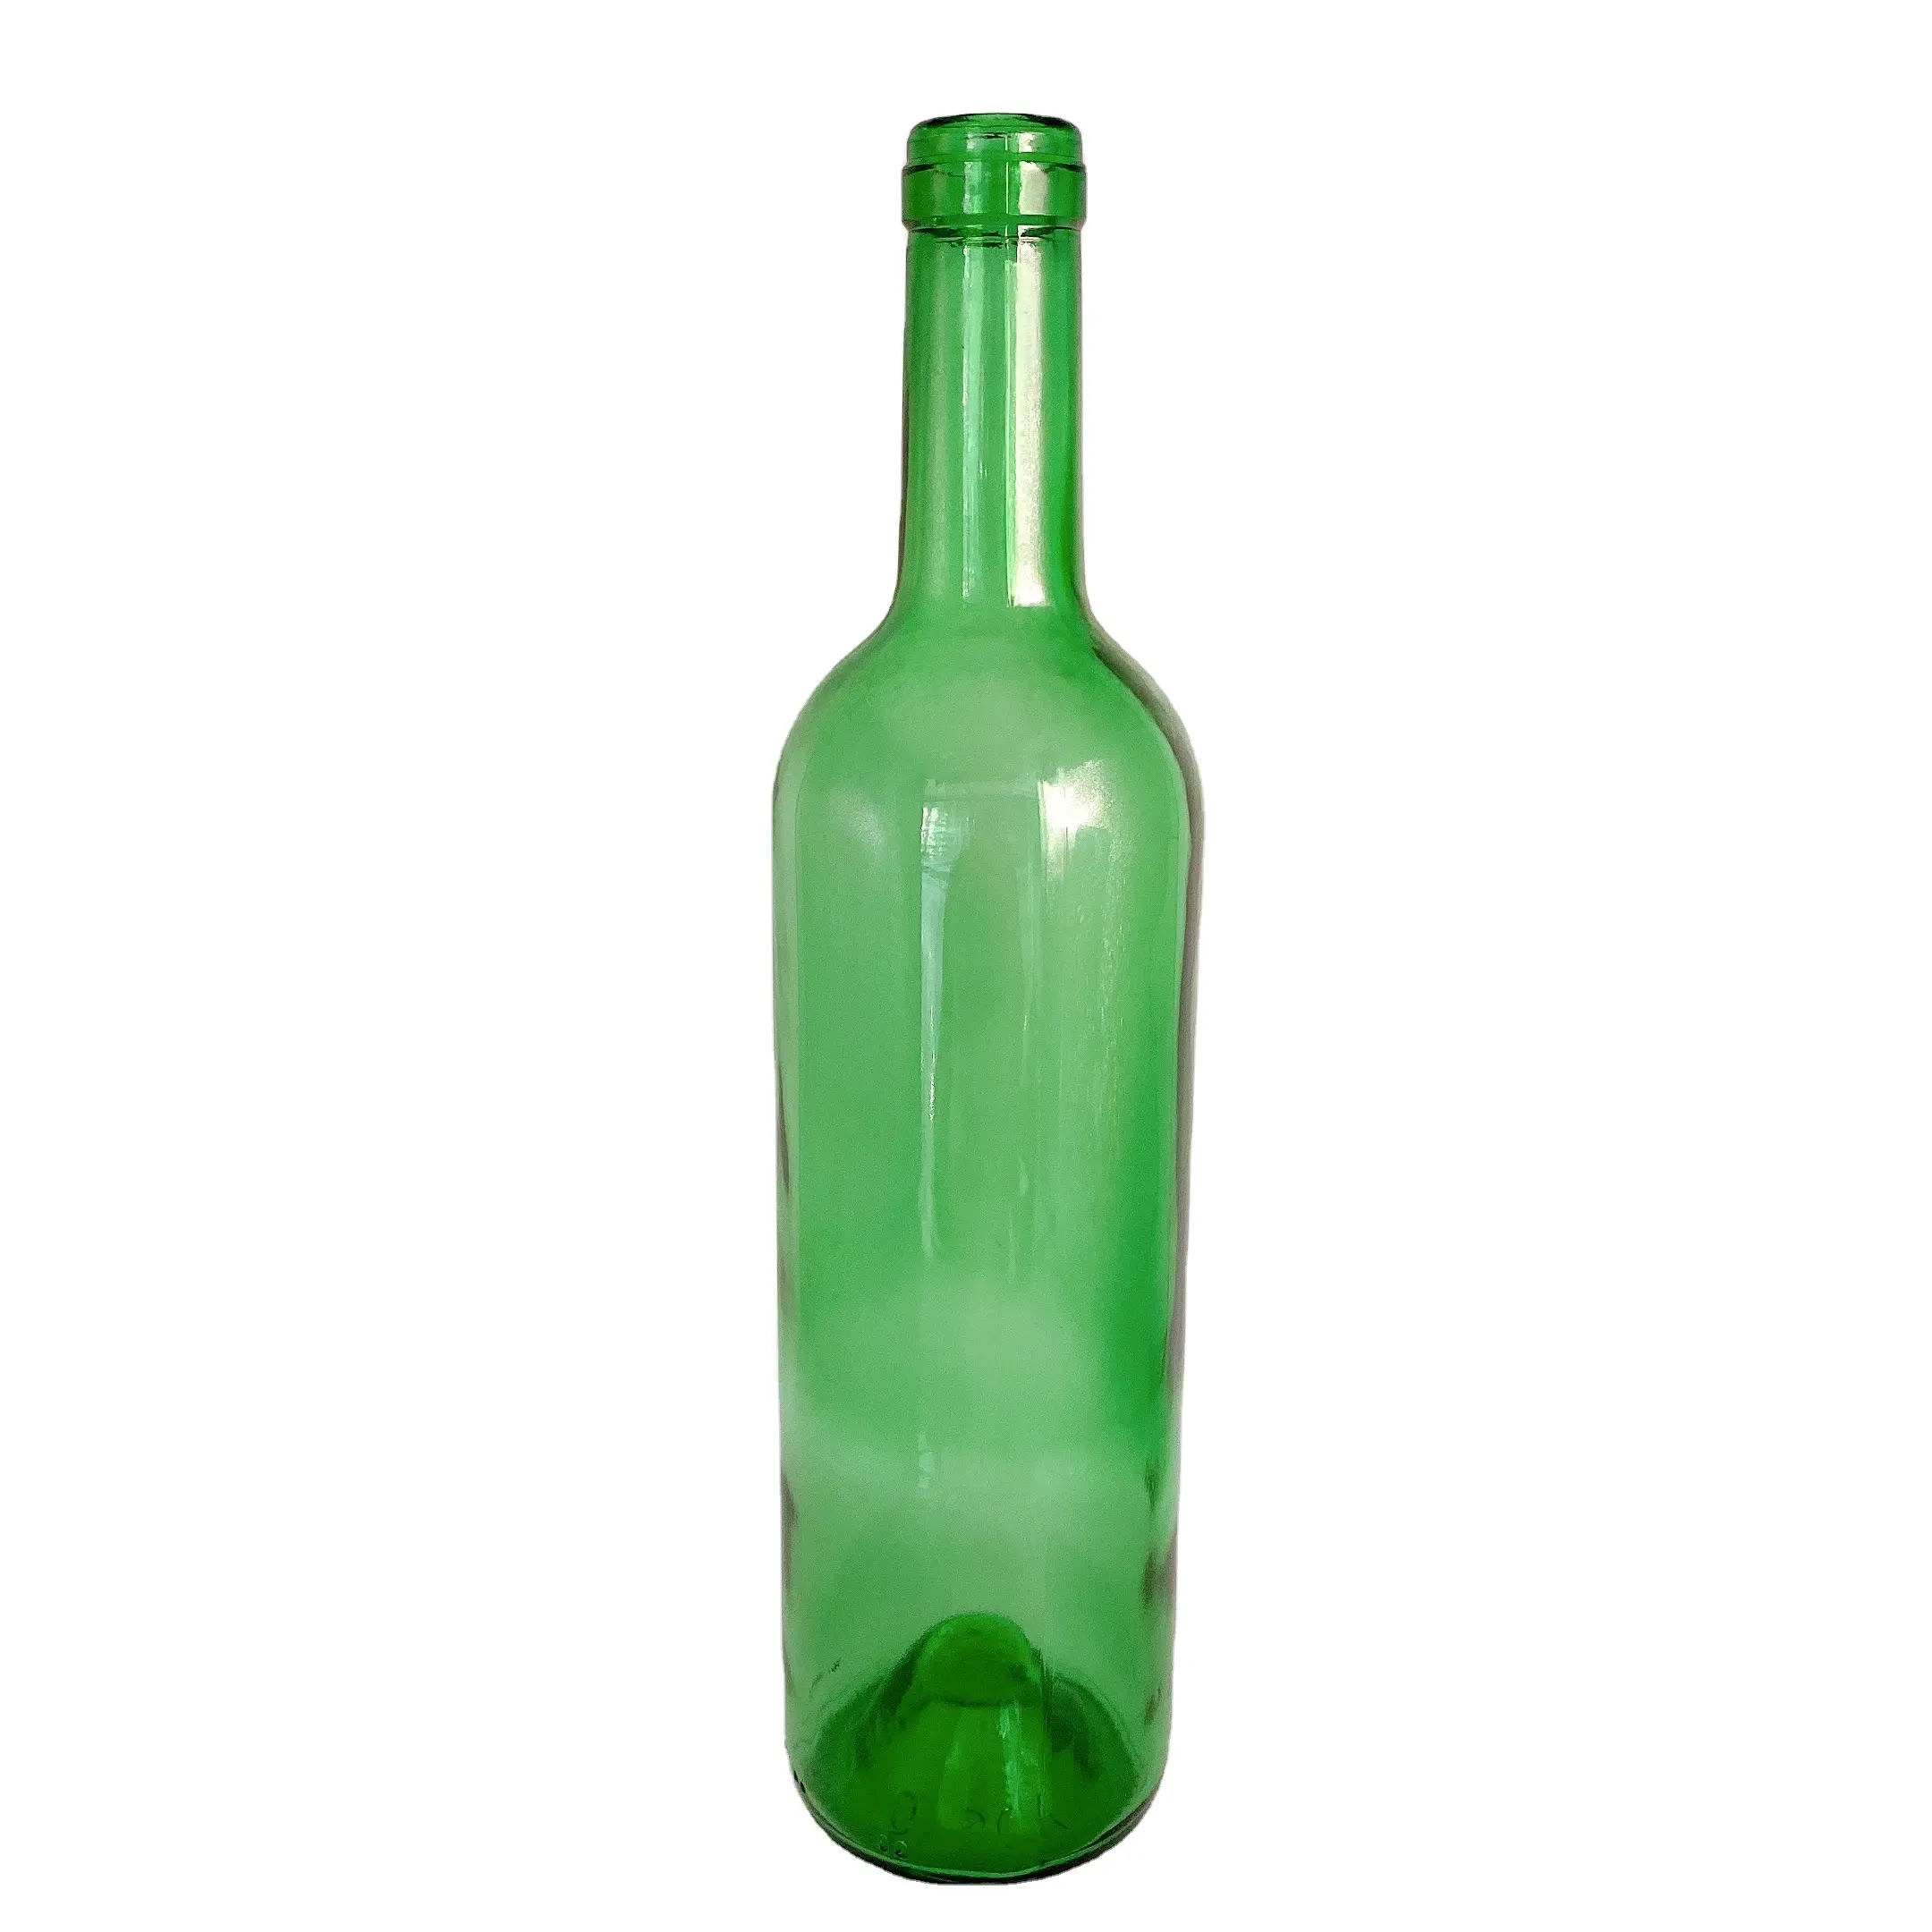 Kork top bordeaux wein premium grün 3mm glas flasche 750ml